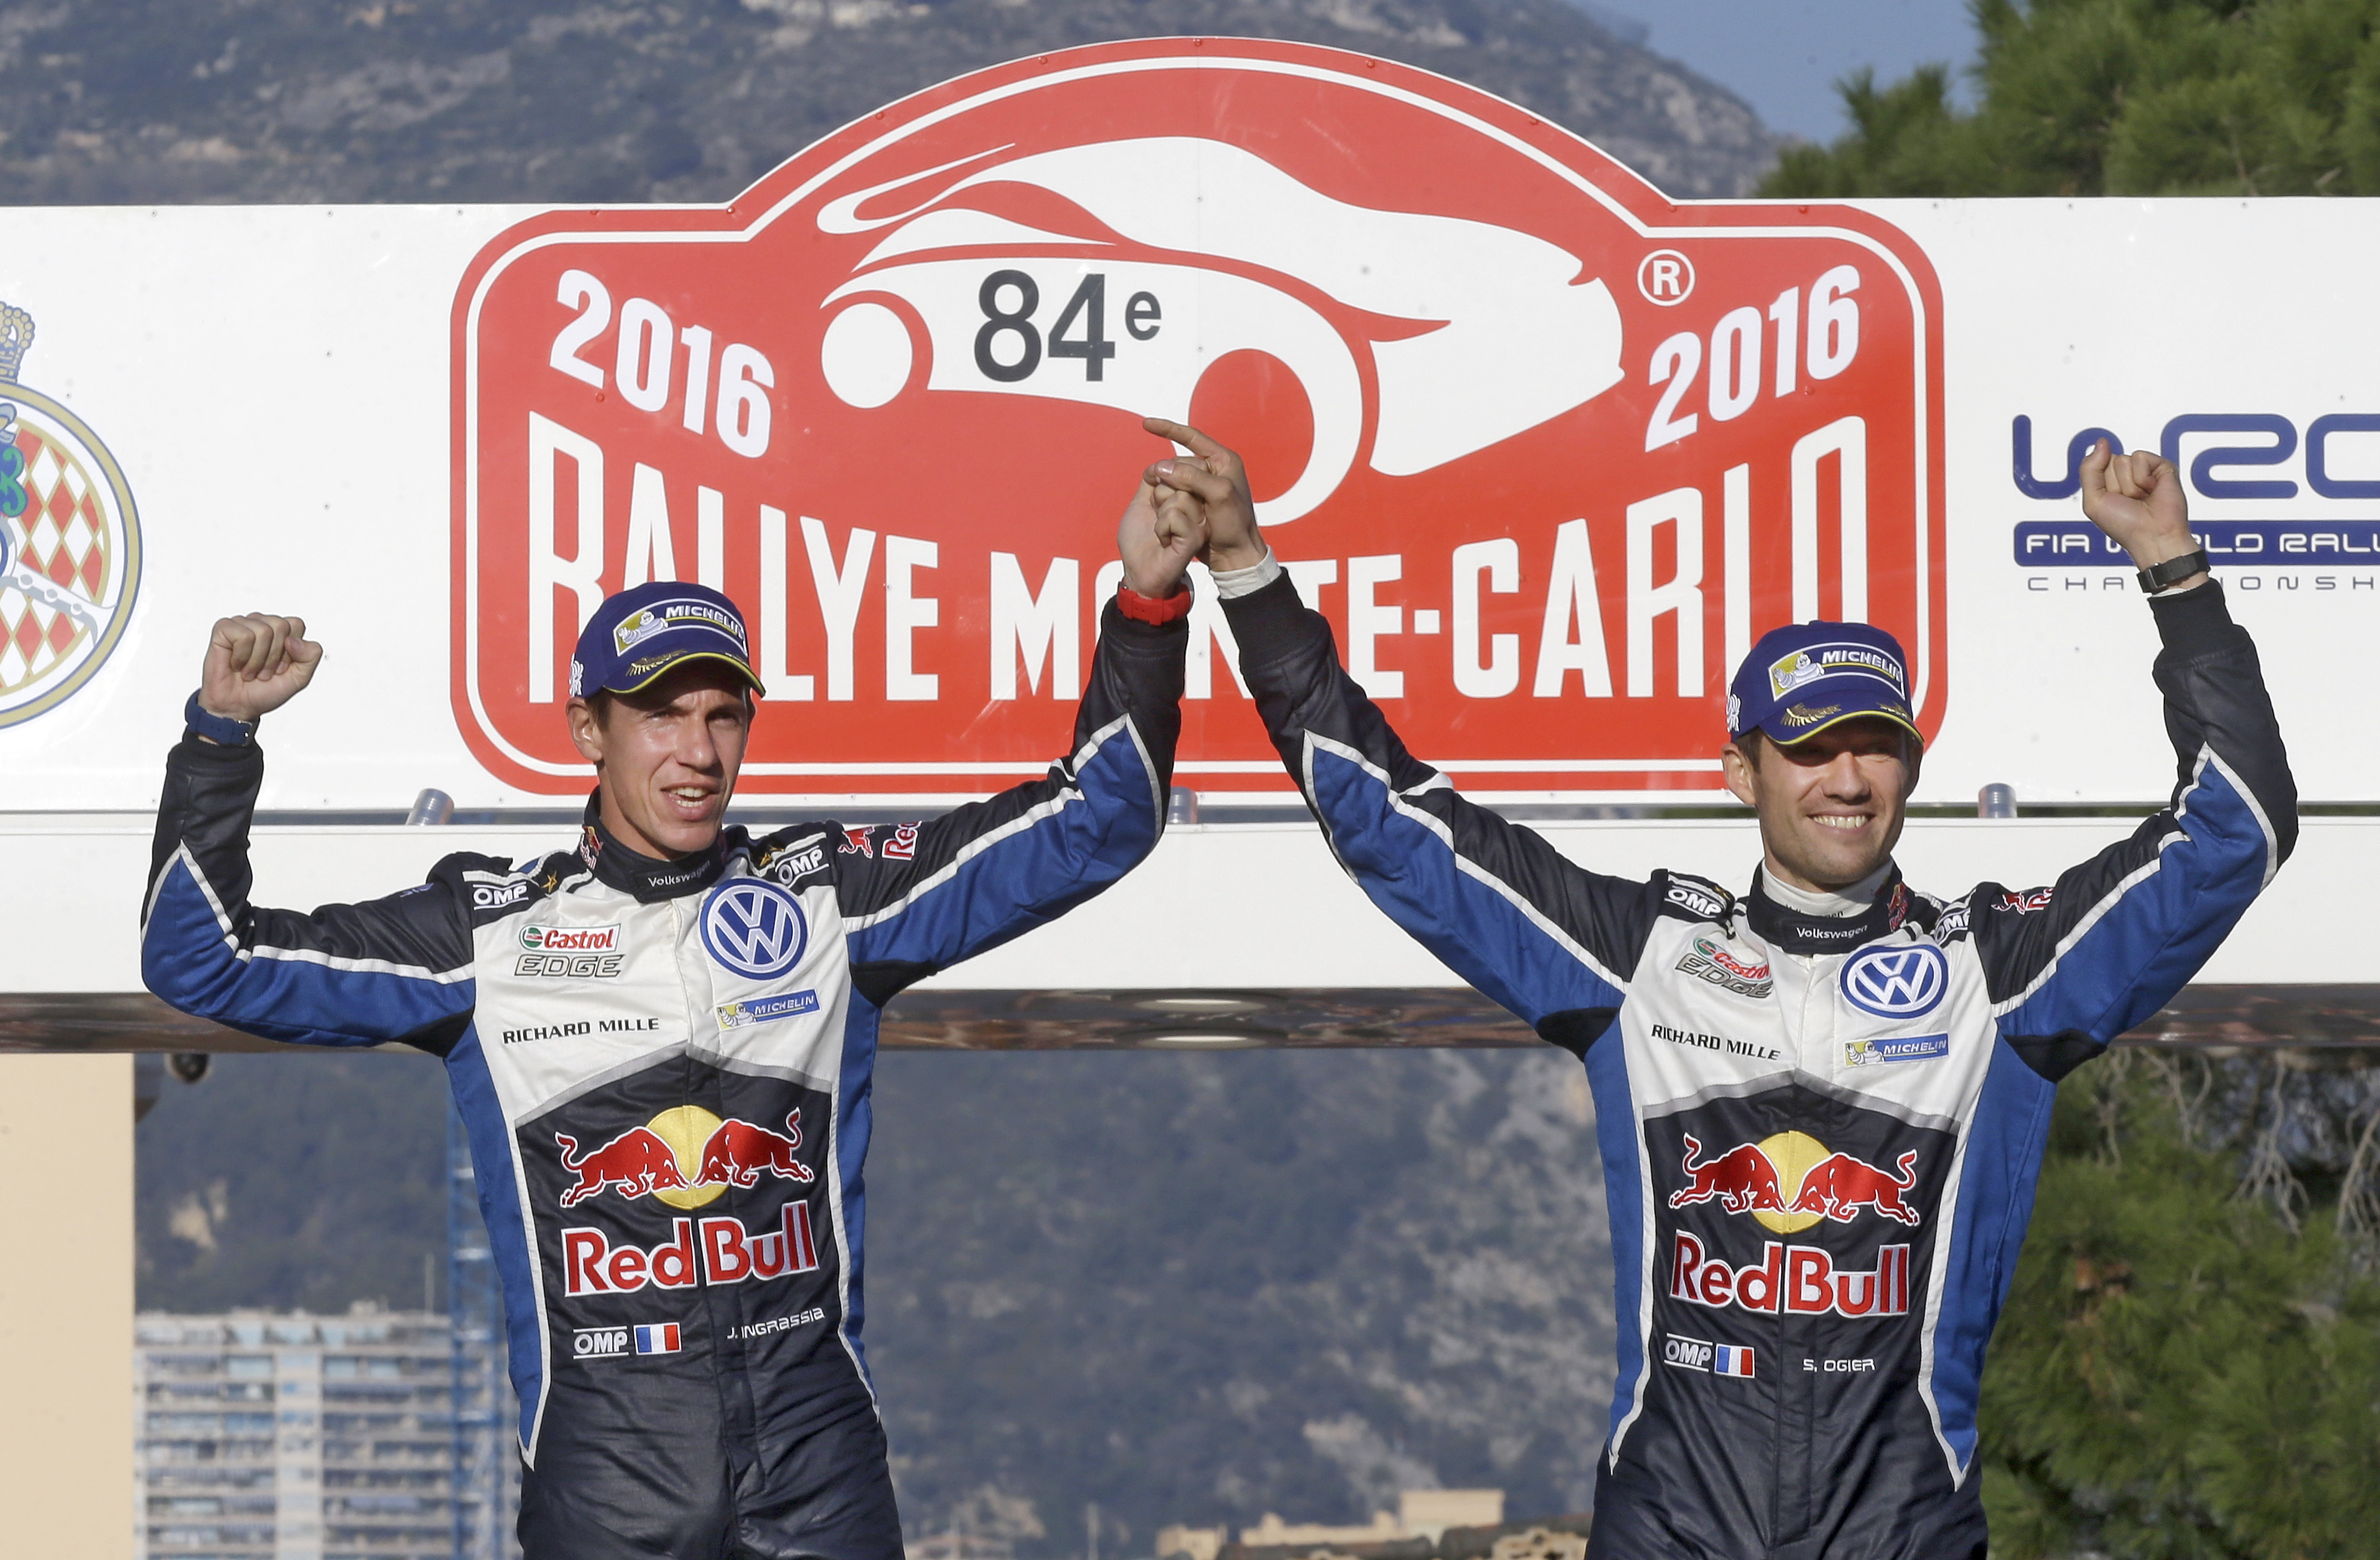 Ράλλυ Monte Carlo 2016: Νίκη στο άνοιγμα της σεζόν για τον S. Ogier